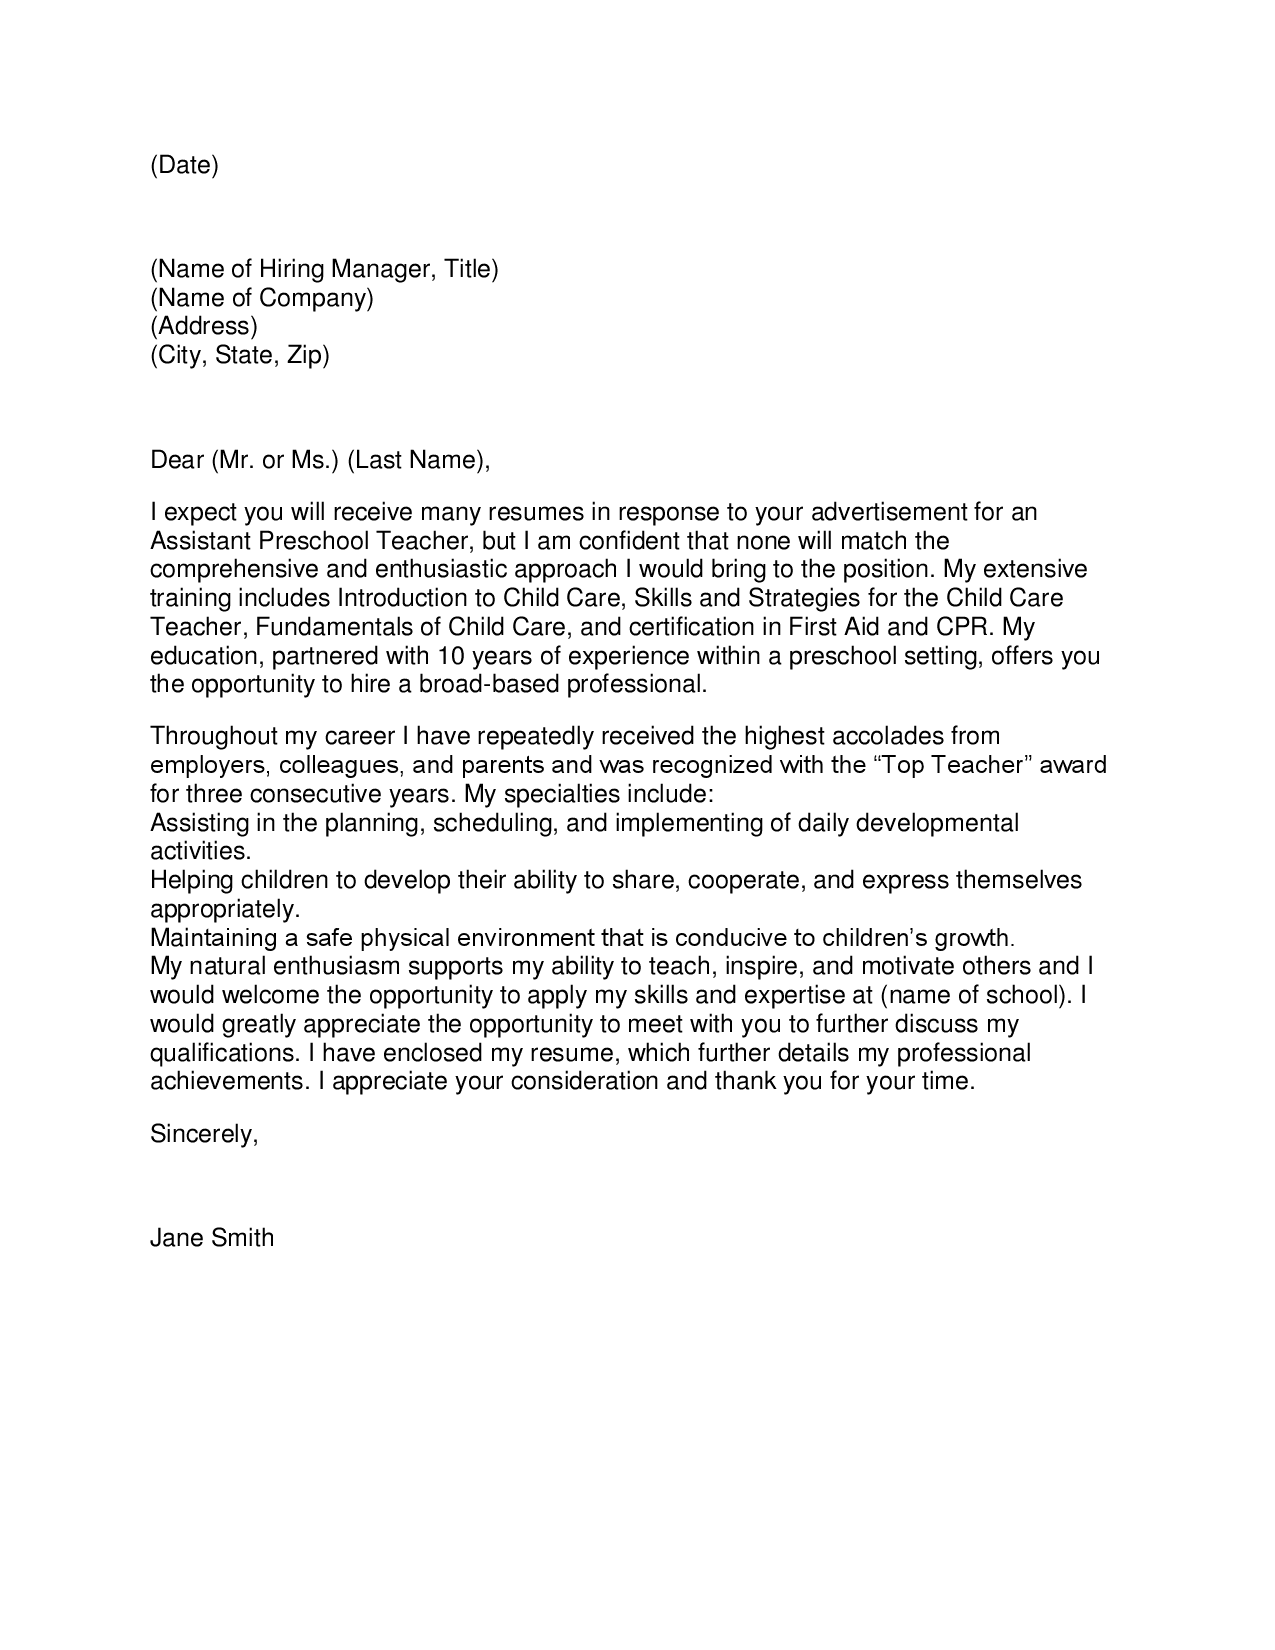 New teacher resume cover letter